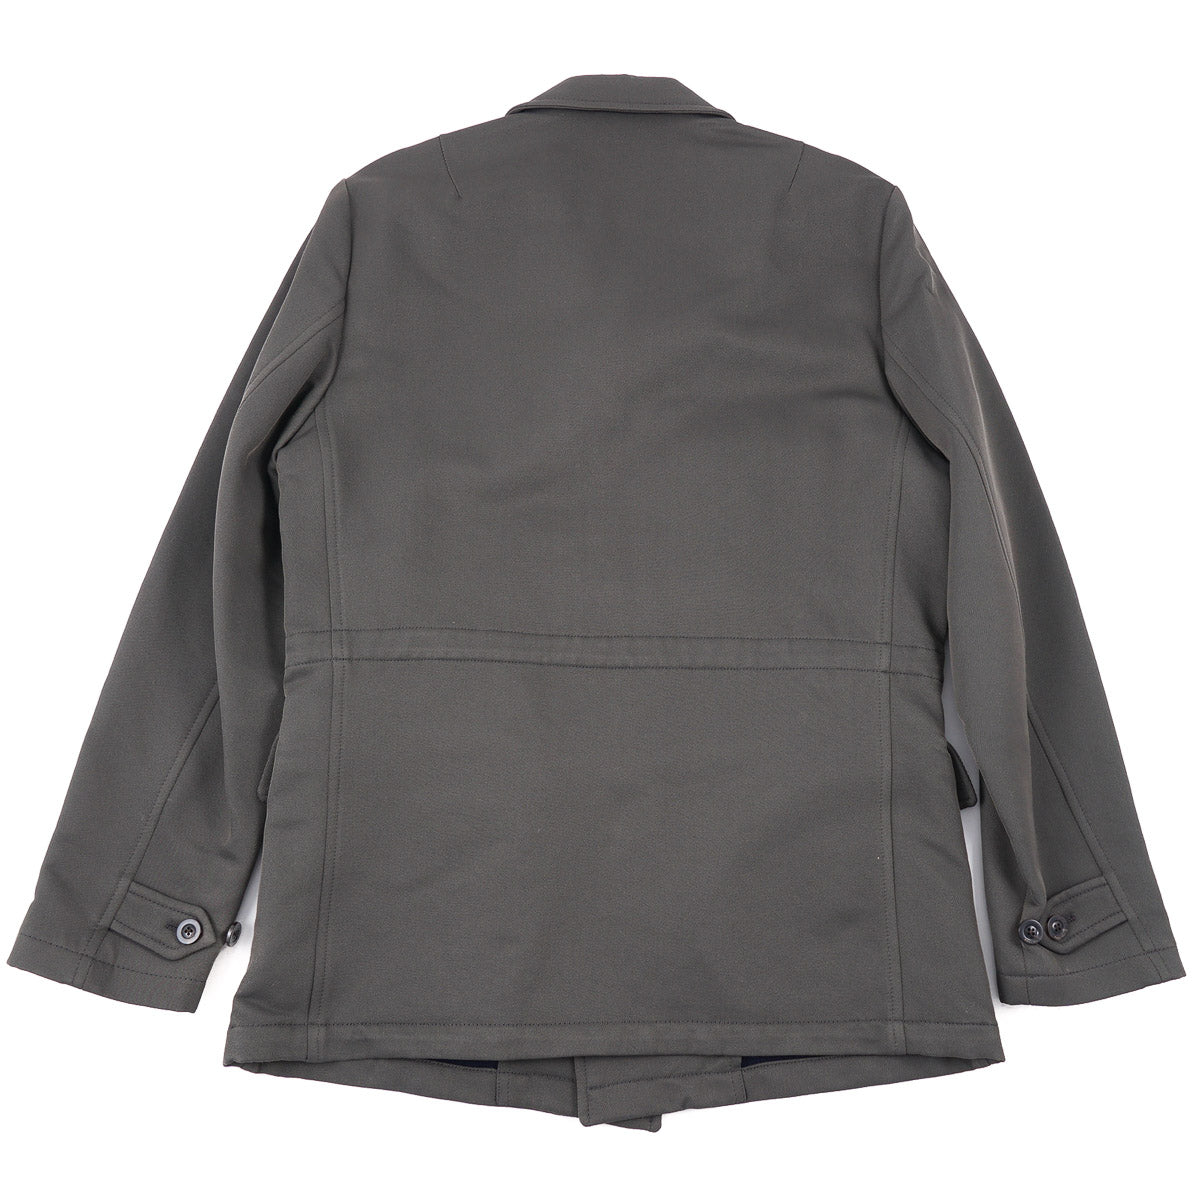 Boglioli Flannel-Lined Technical Field Jacket - Top Shelf Apparel